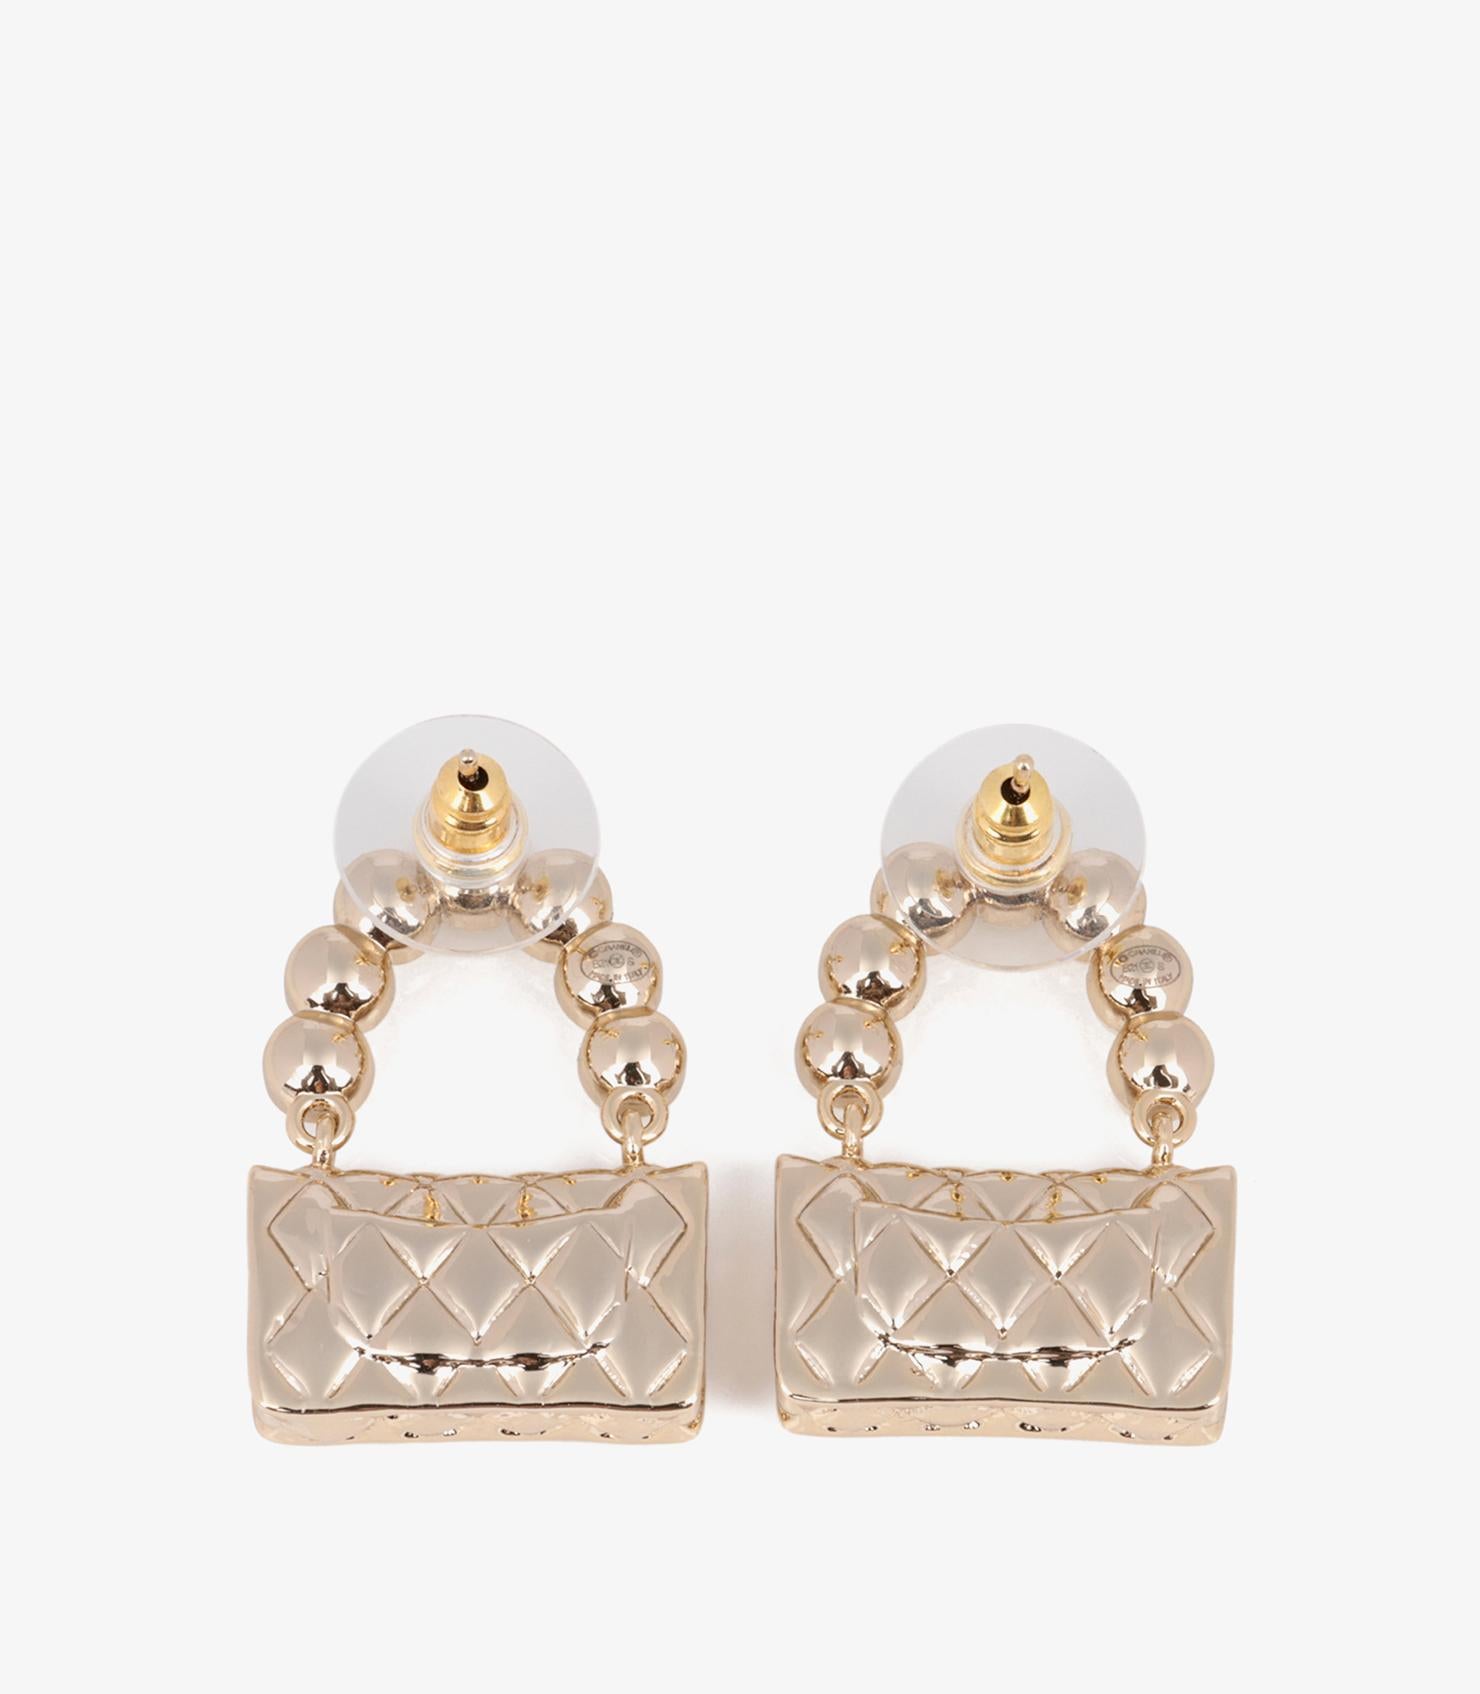 chanel flap bag earrings